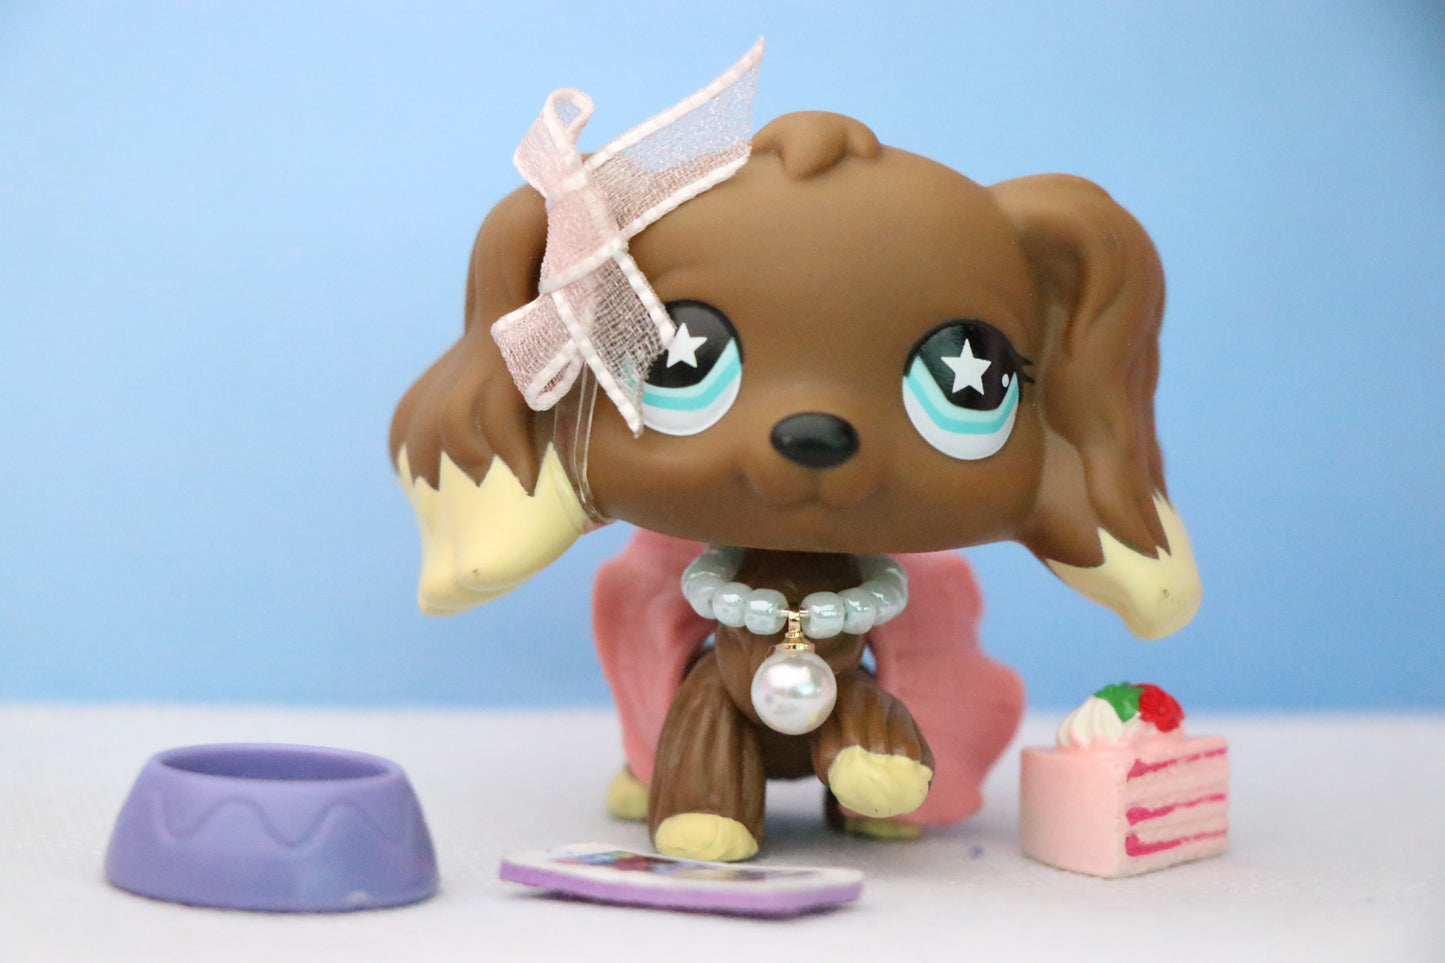 Littlest Pet Shop lps Cocker Spaniel Figure with lps Accessories Outfit Dress